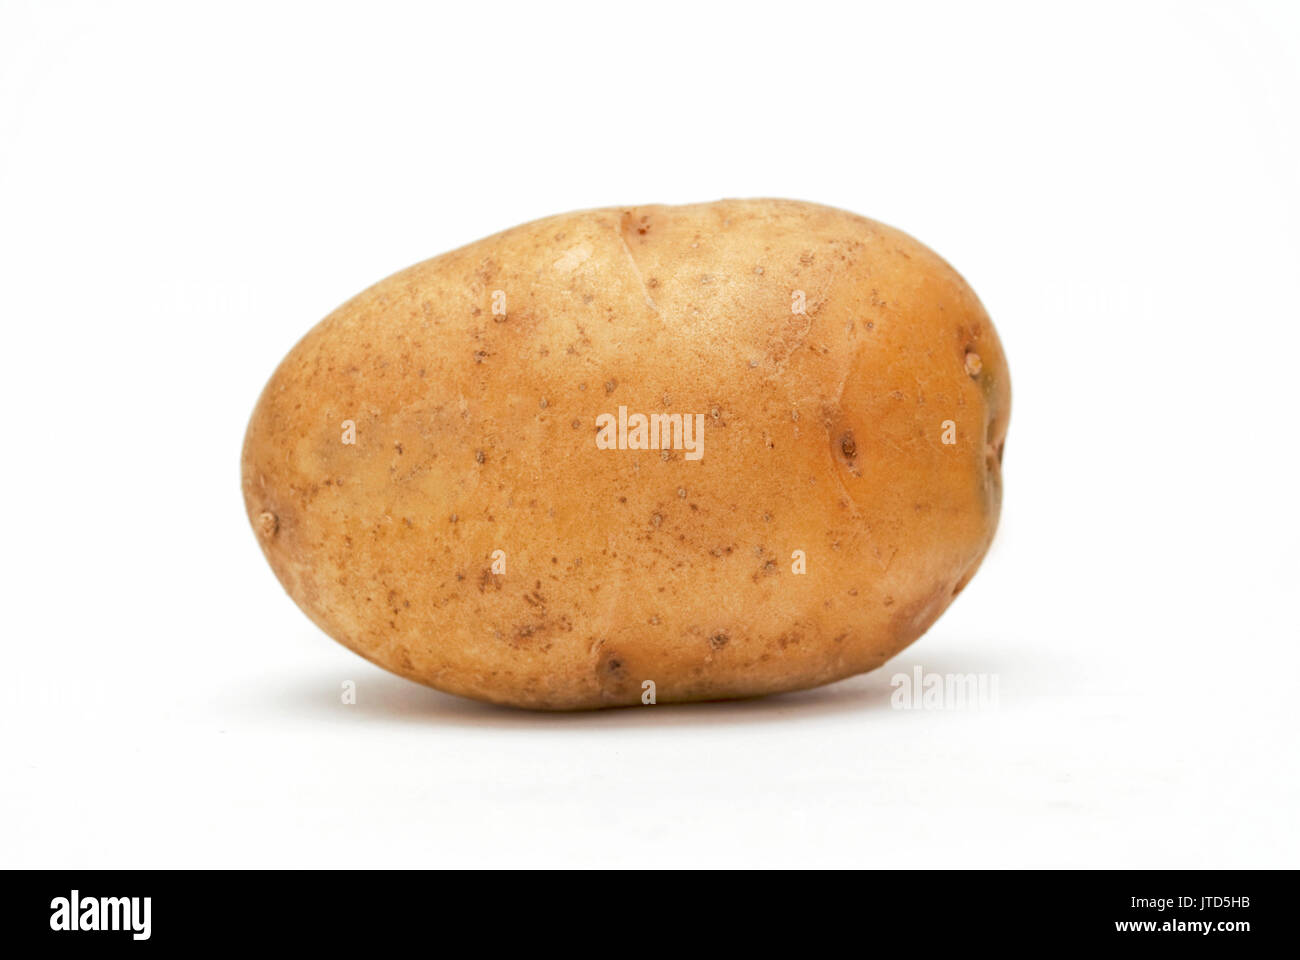 Single large potato isolated against a white background Stock Photo